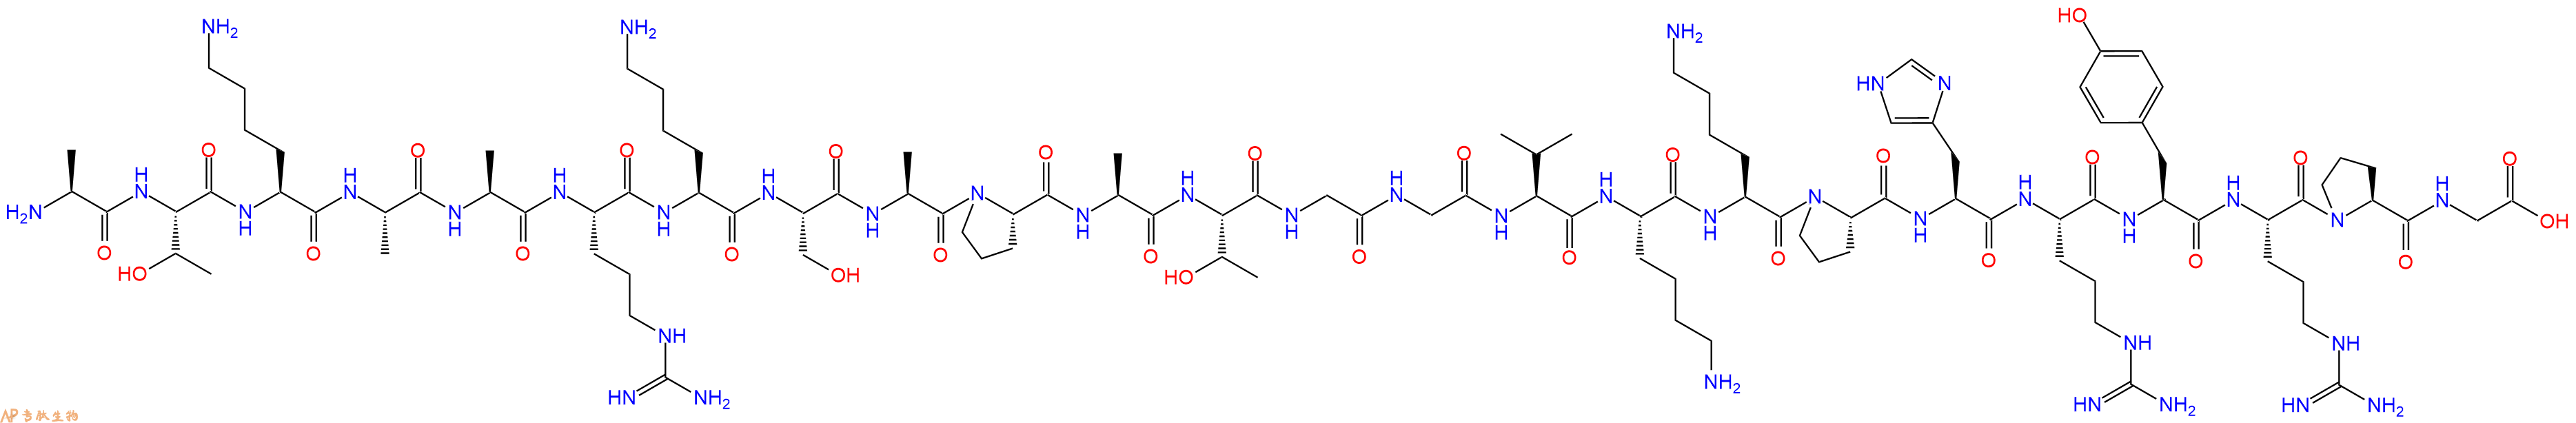 专肽生物产品组蛋白肽段Histone H3 (21-44)